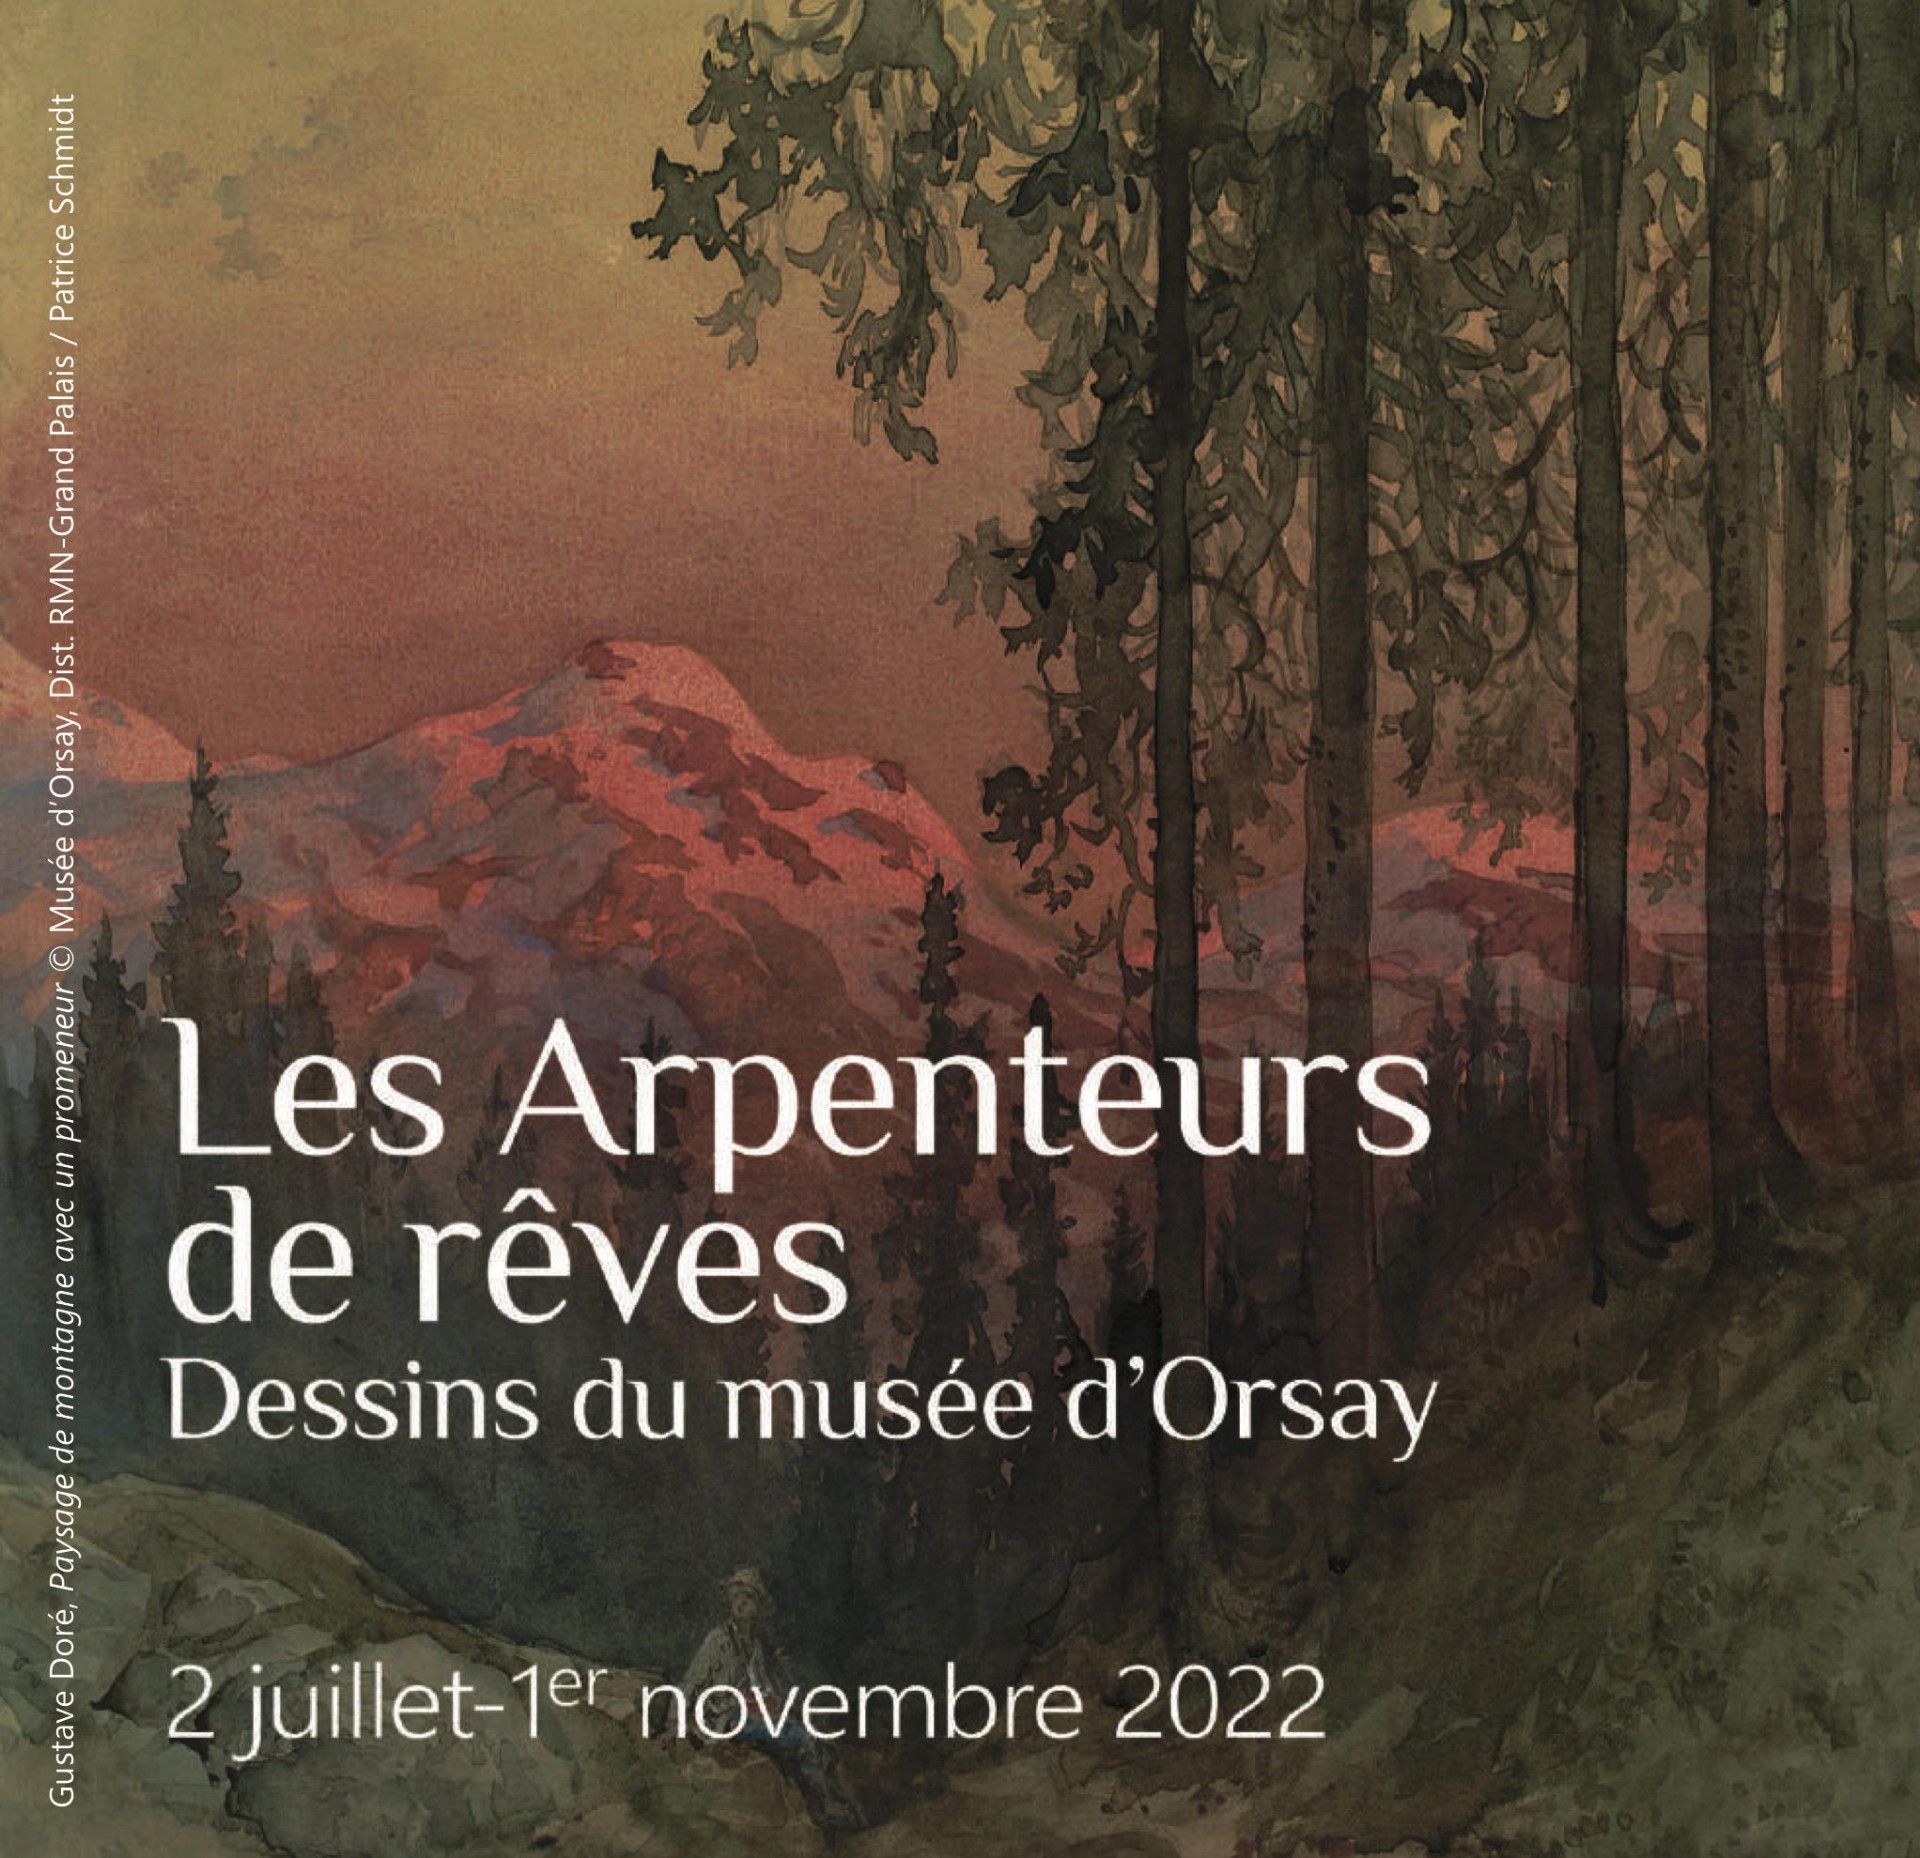 Les Arpenteurs de rêves – Dessins du musée d'Orsay